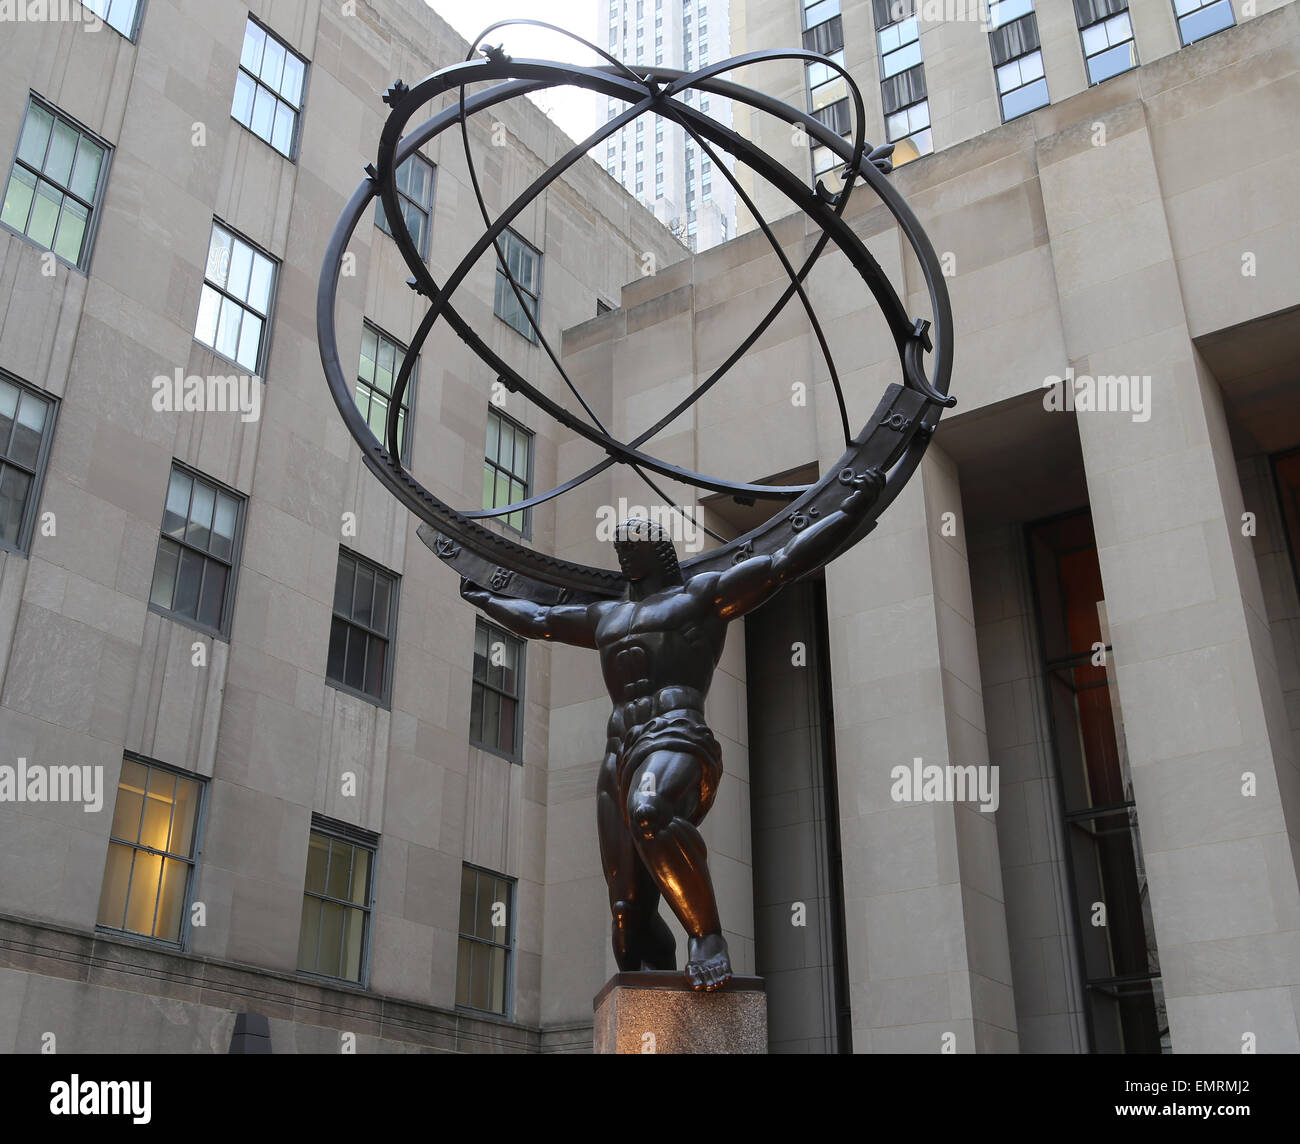 Stati Uniti d'America. La città di New York. Statua di Titan Atlas, da Lee Lawrie 1937. In stile Art Deco. Il Rockefeller Center. Quinta Avenue. Manhattan. Foto Stock